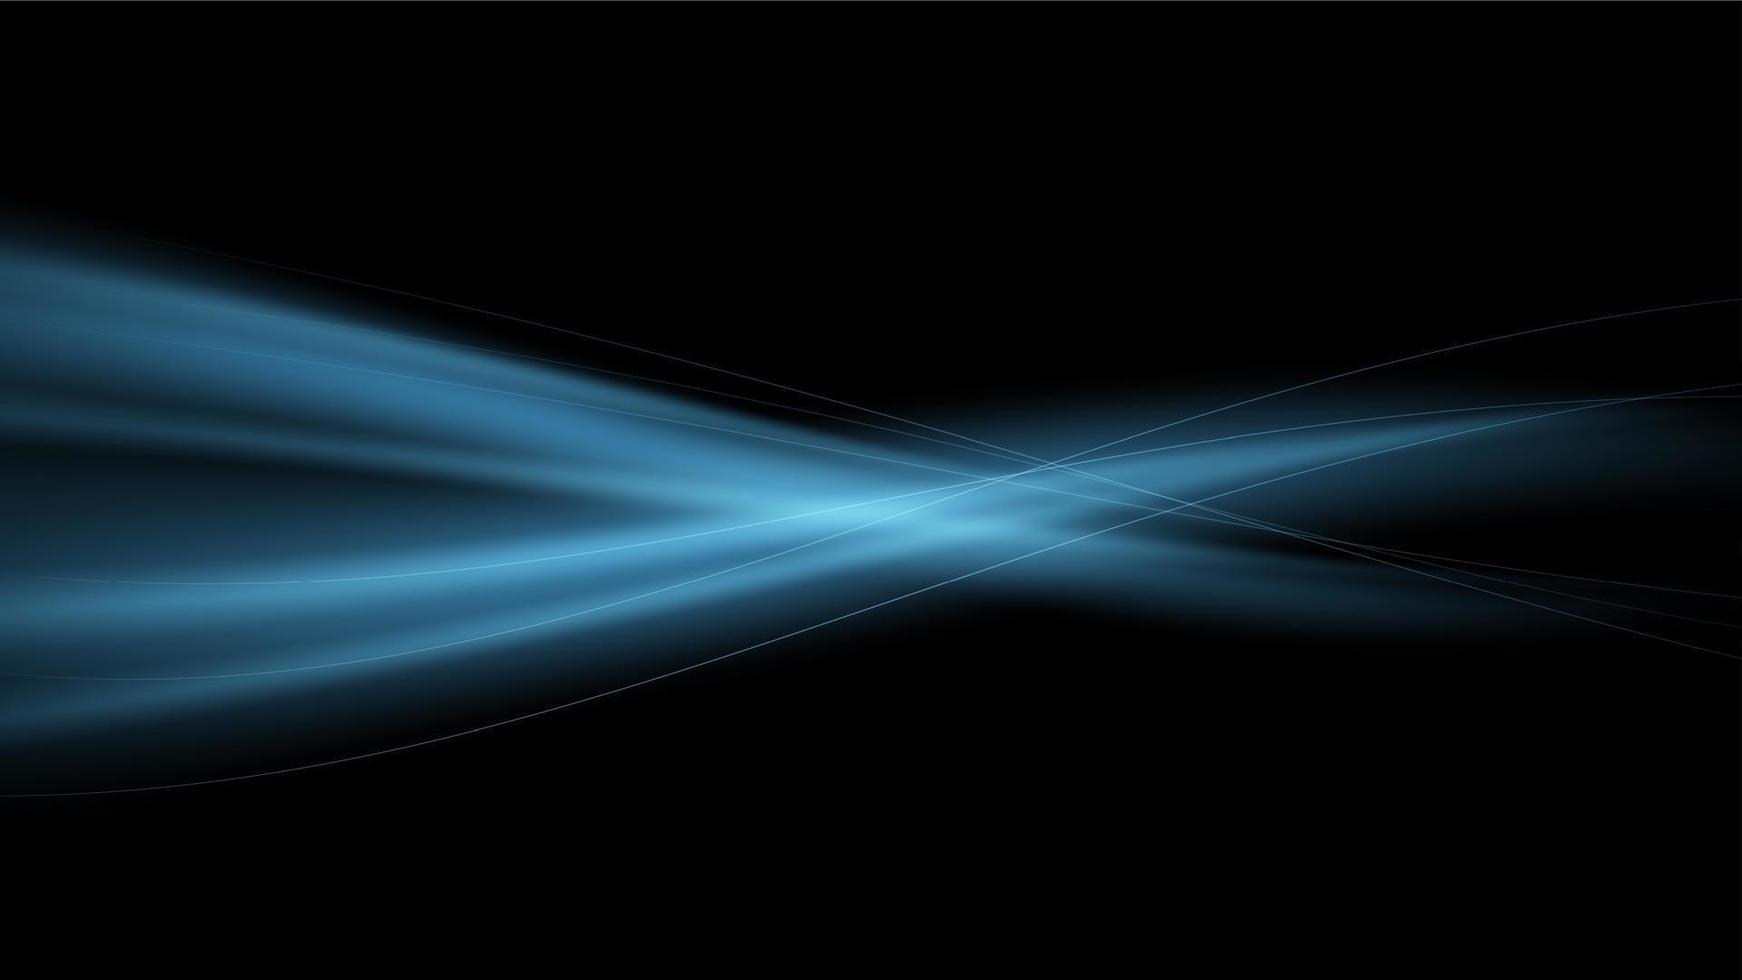 vektor abstrakt bakgrund med blå strömmar av luft på en svart bakgrund. blå magi flamma. lysande Vinka.